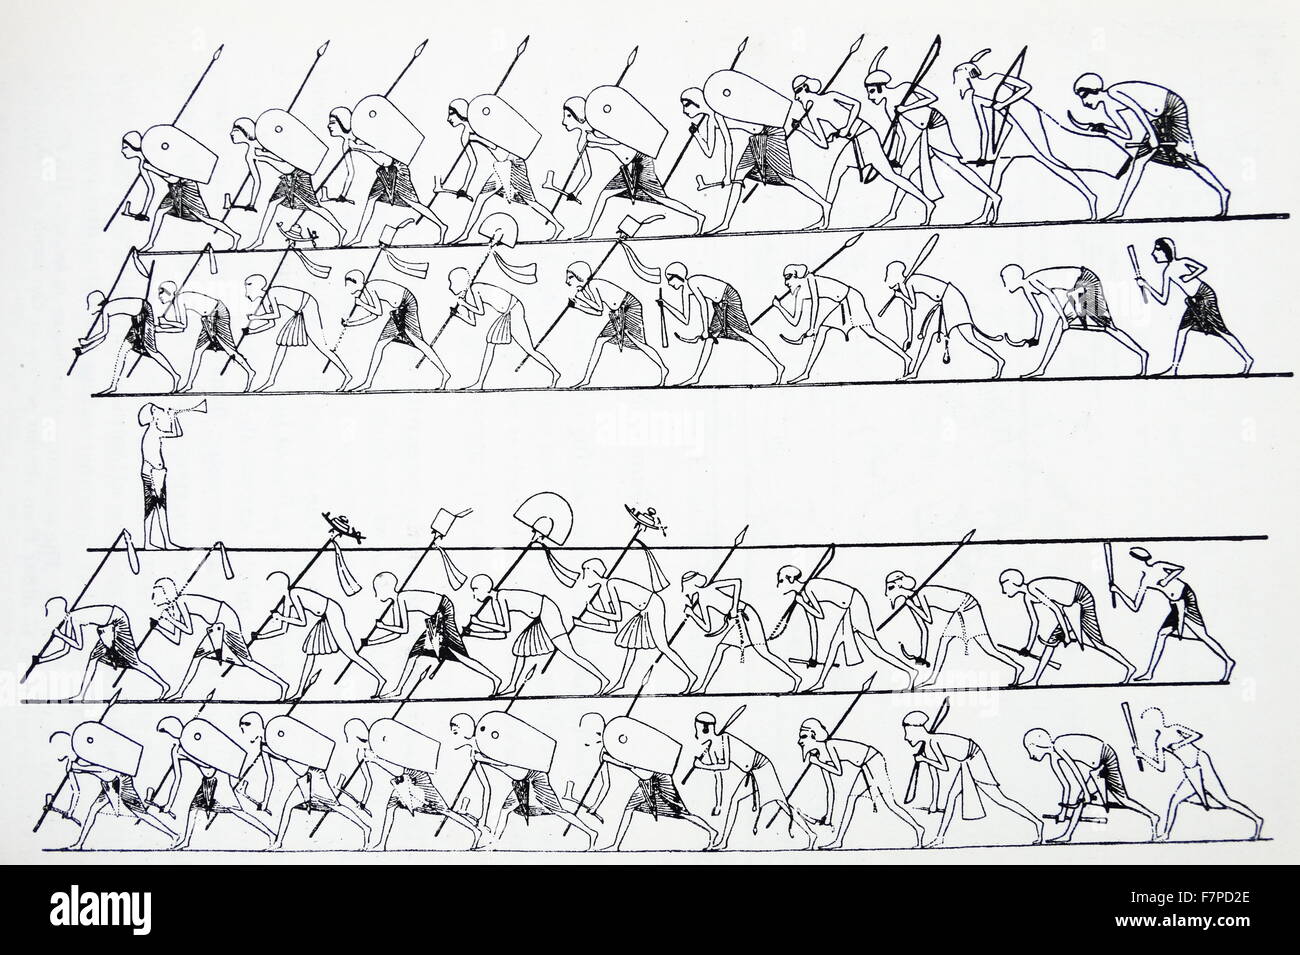 Alivio de Tell el-Amarna, mostrando los trompetistas y soldados en el palacio del faraón Akhenaton, conocido como el rey hereje. Fue el décimo Rey de la XVIII Dinastía. Xviii dinastía , 1348-1336 AEC. Foto de stock